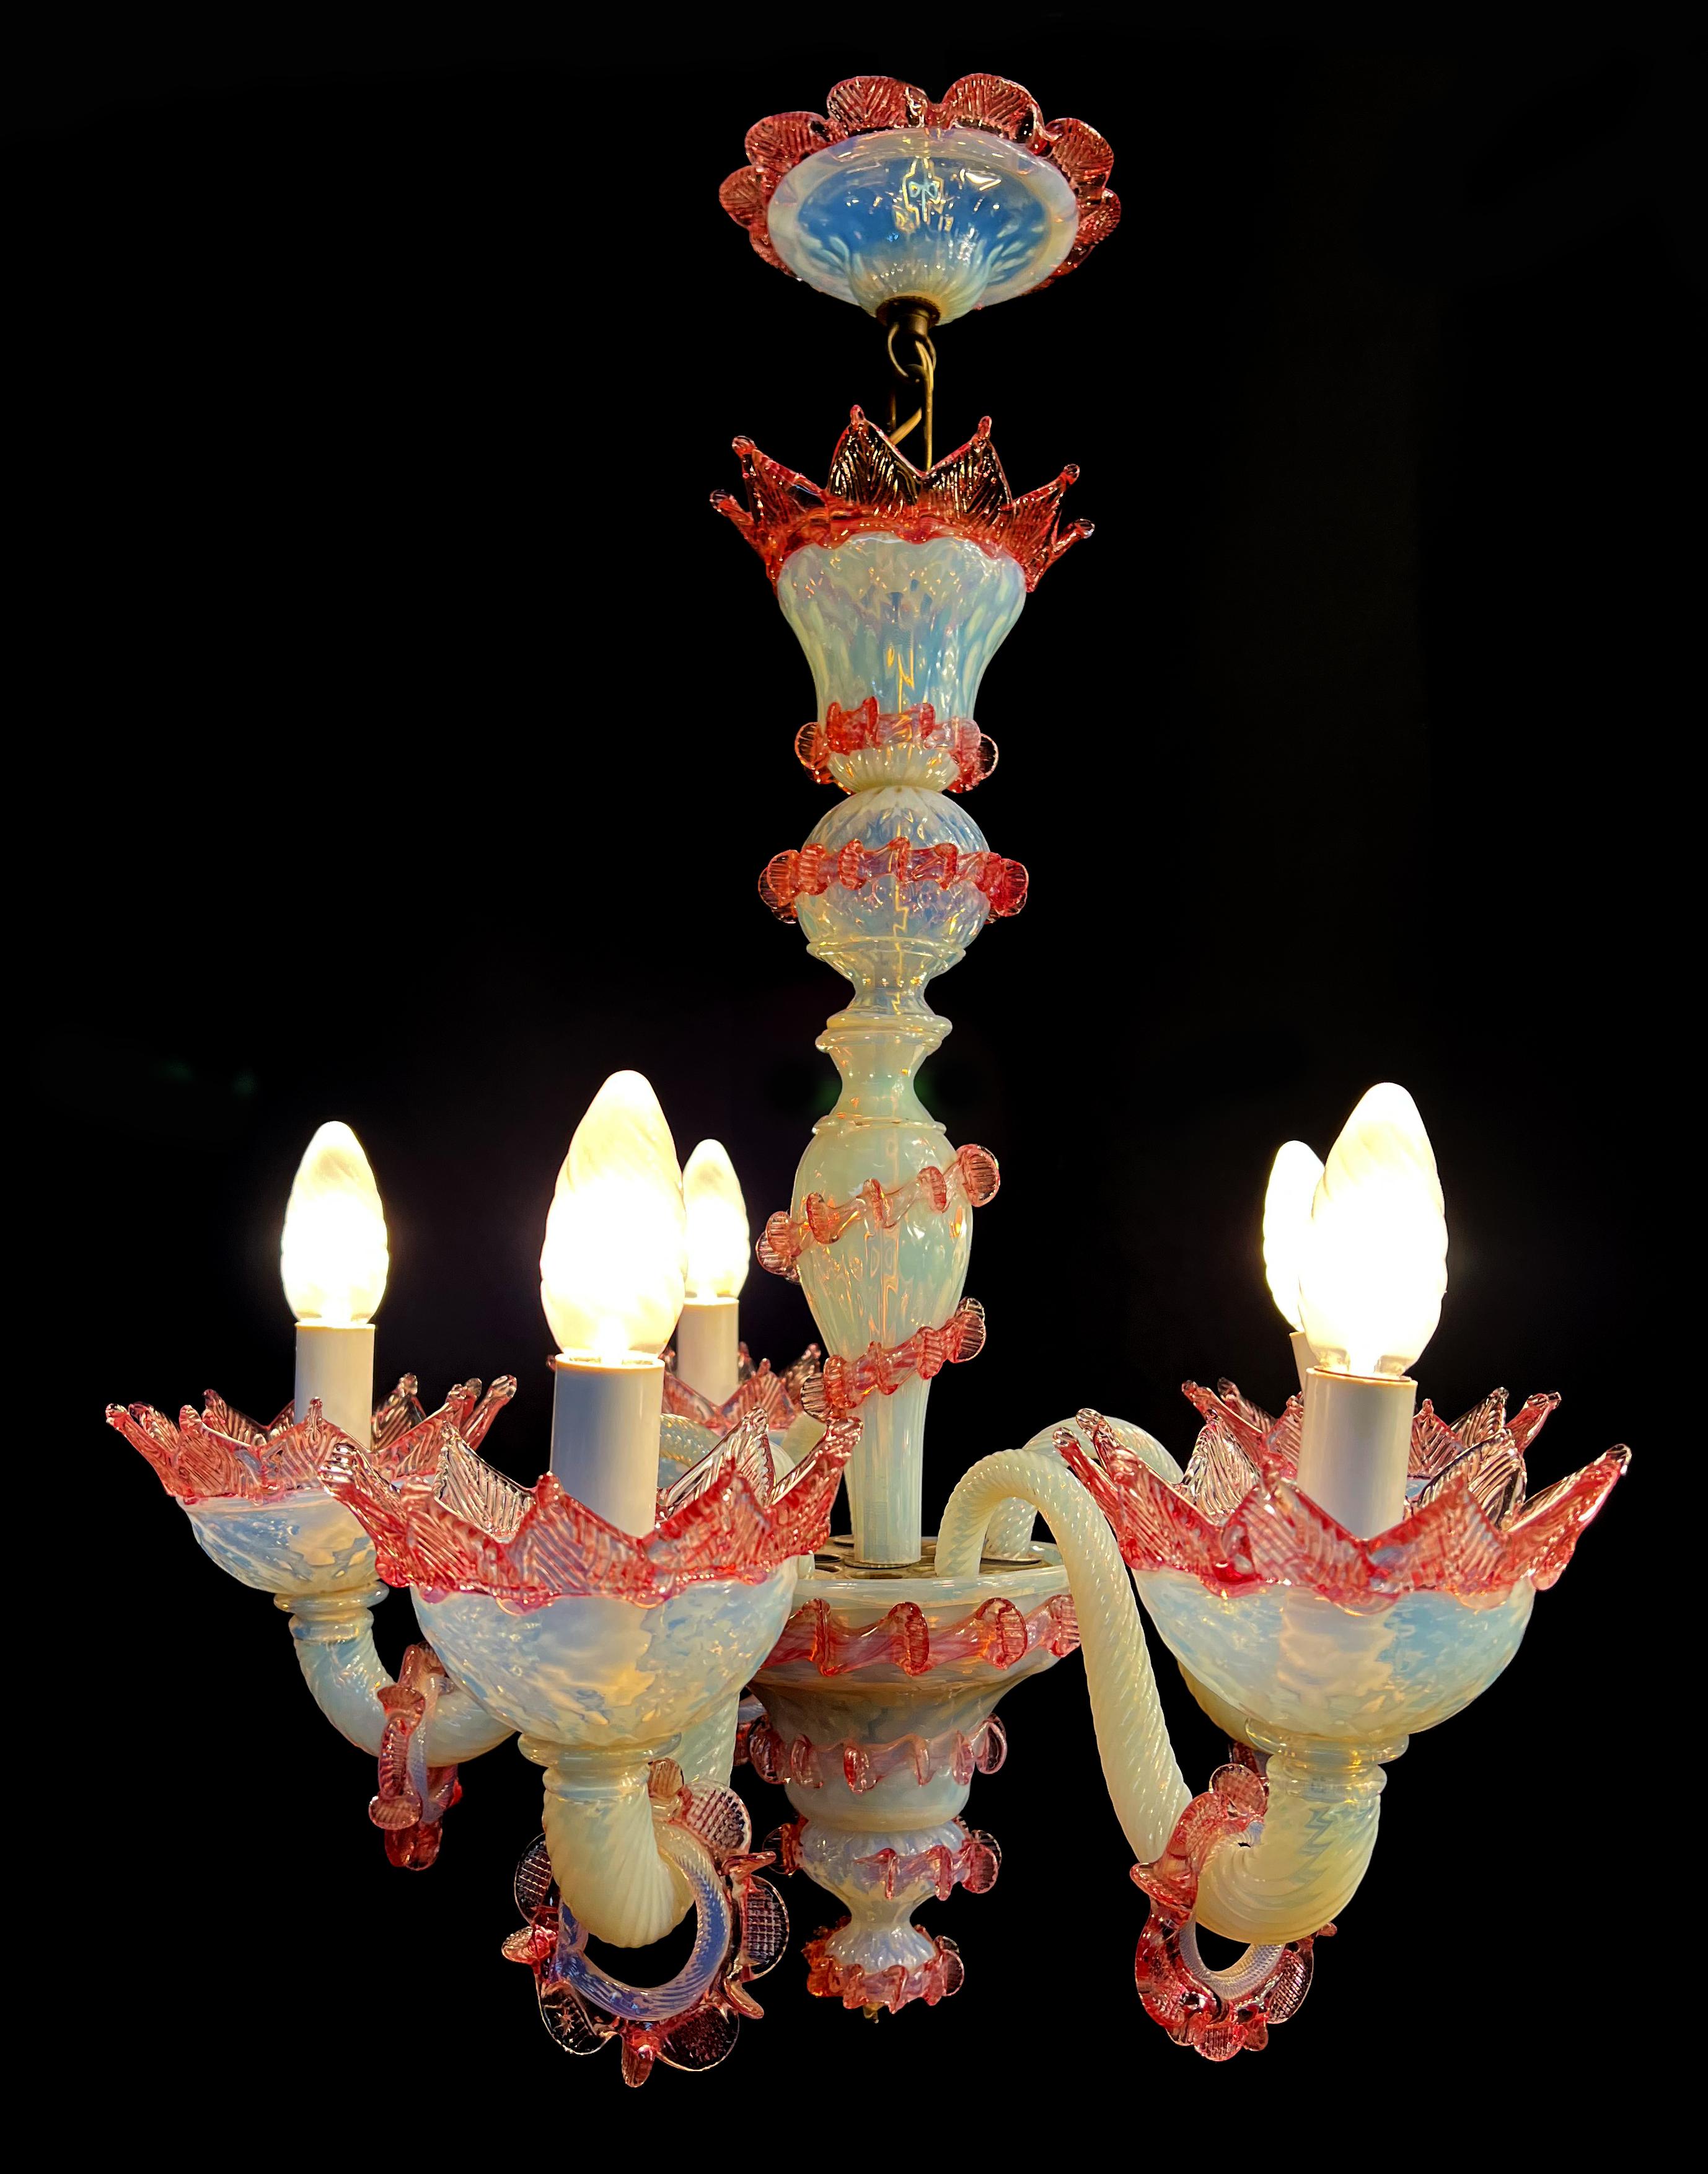 Lustre de Murano d'une beauté époustouflante. Lampes (5) en pure pâte de verre de Murano. Chaque pièce est un bijou.